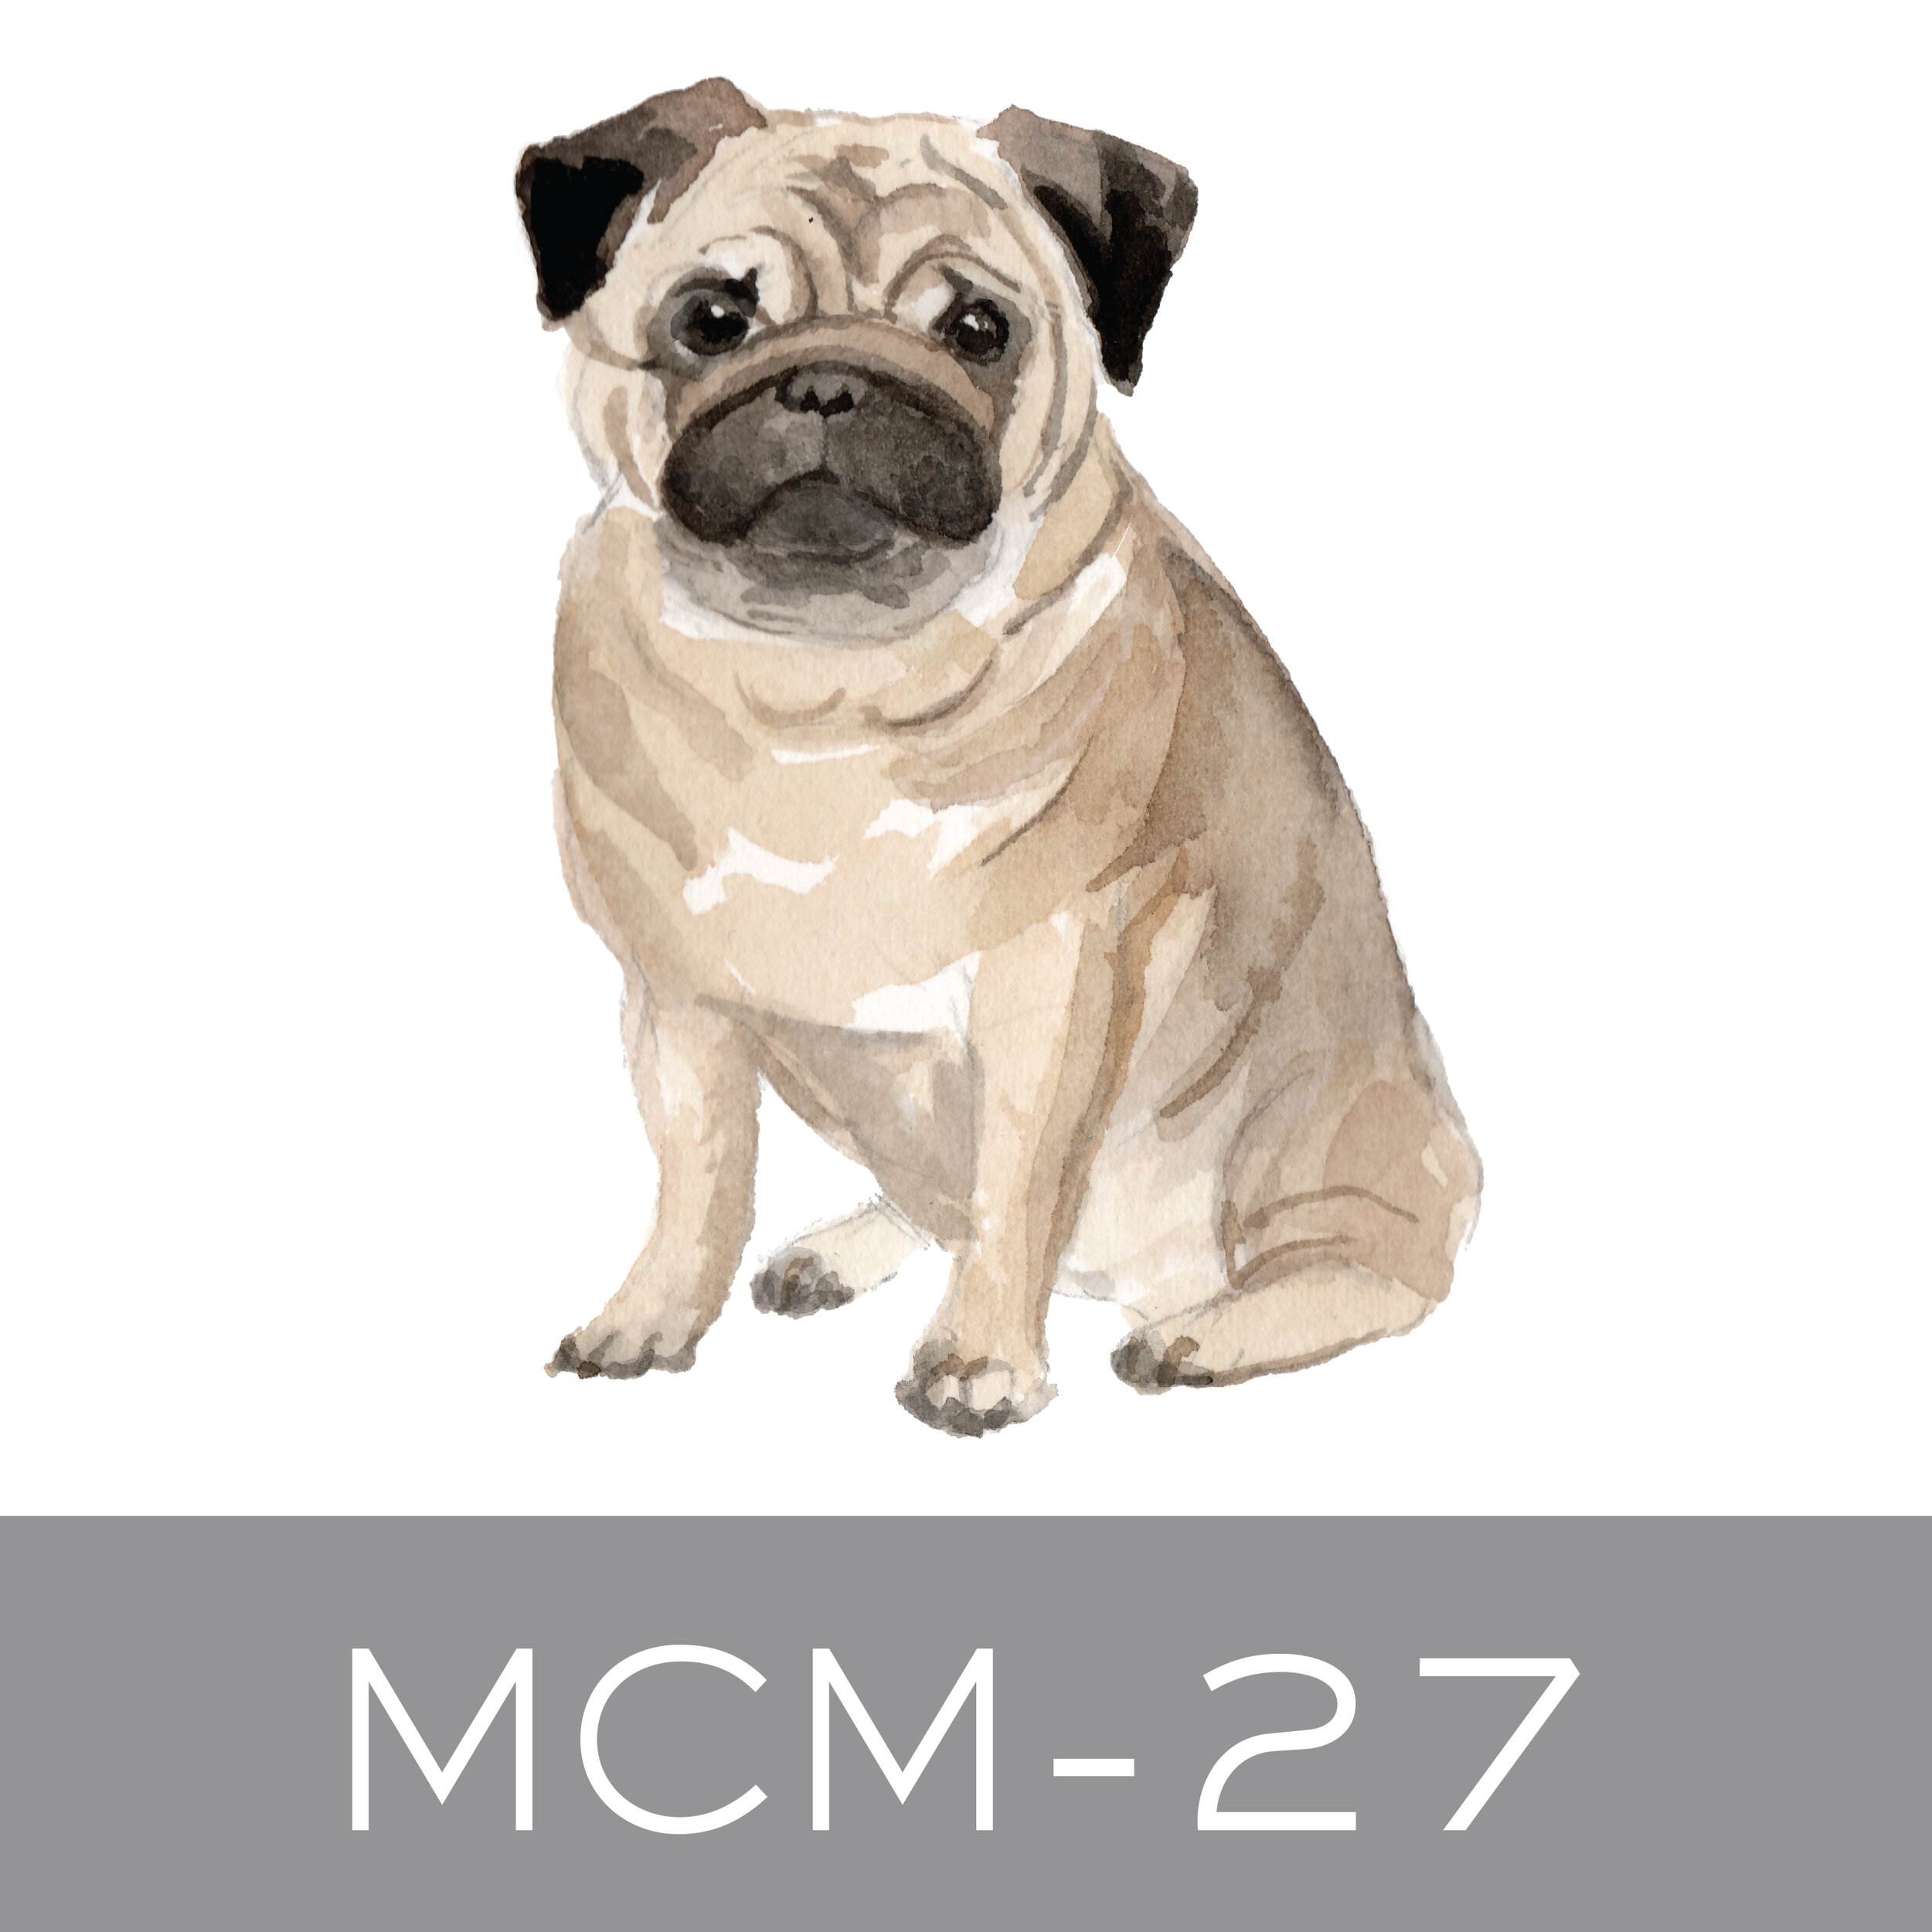 MCM-27.jpg